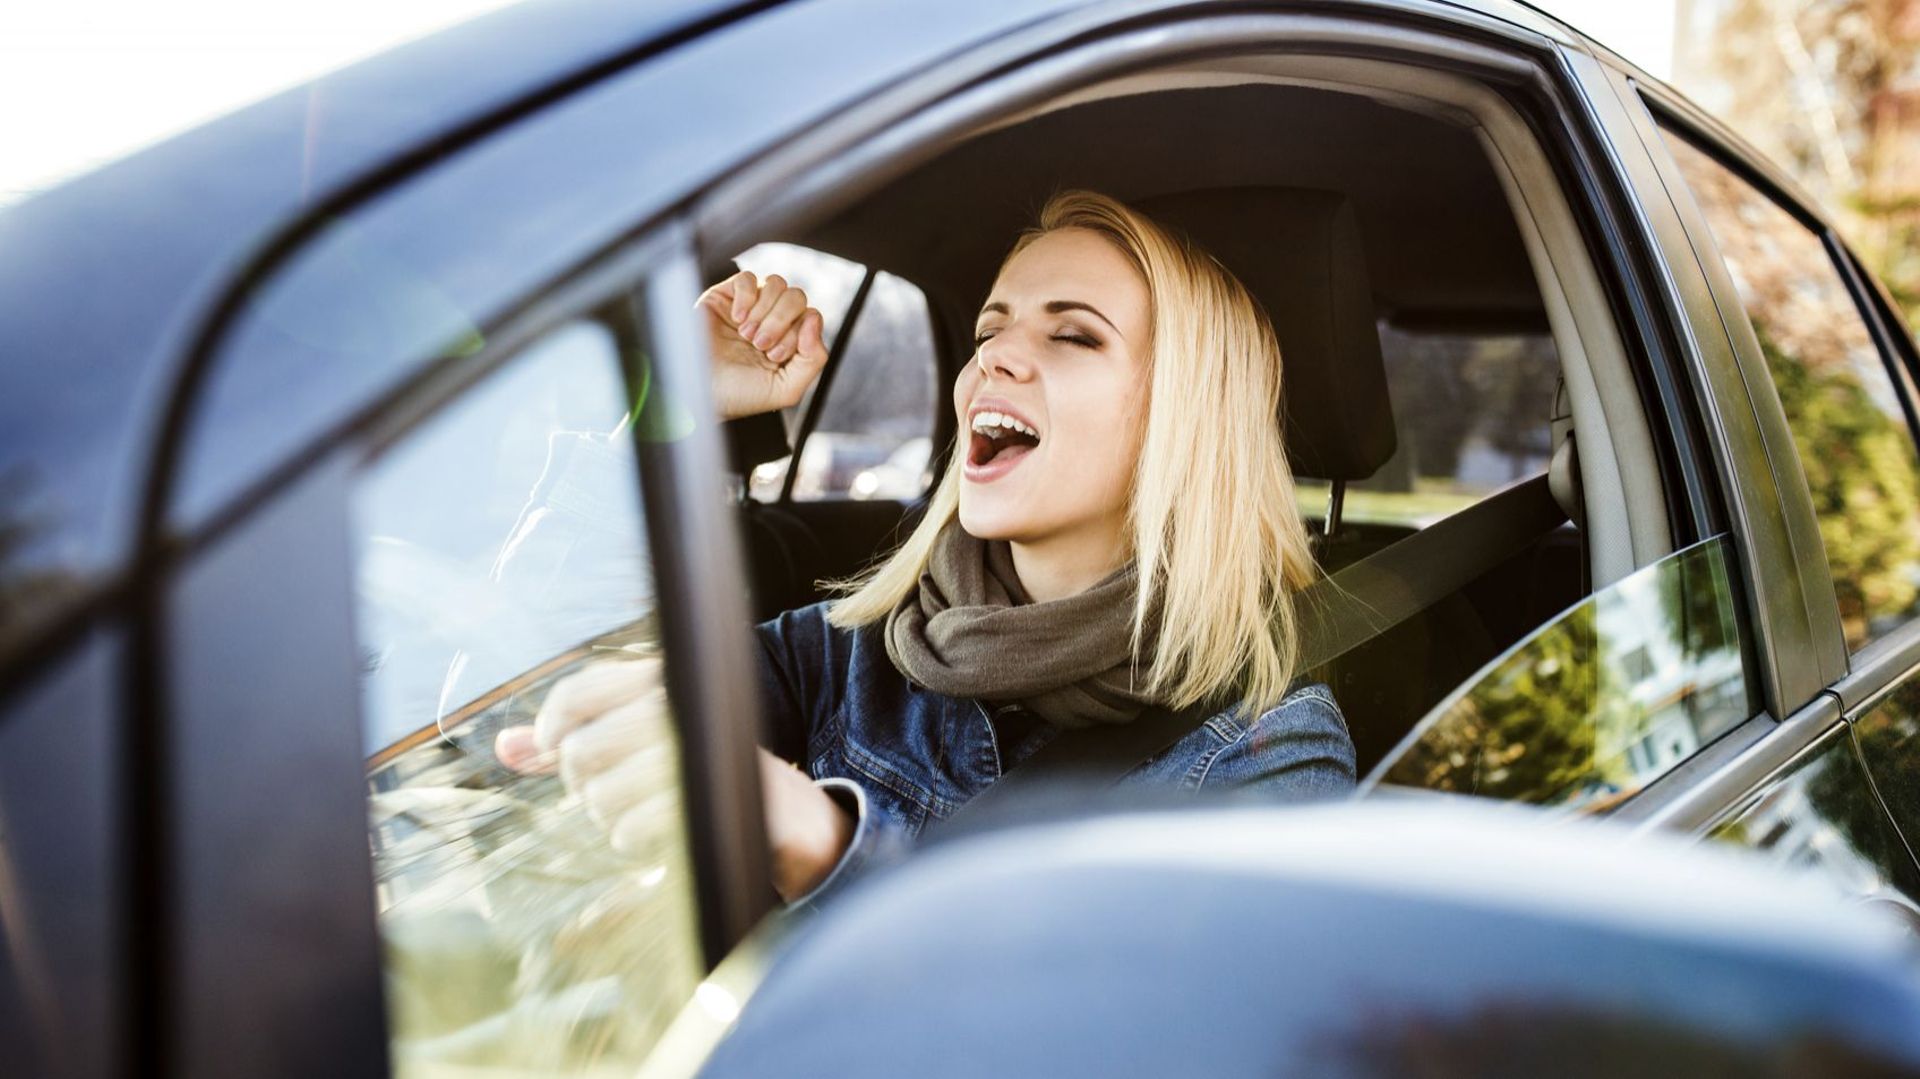 Chanter tout en conduisant procure toujours beaucoup de plaisir et détend le conducteur.